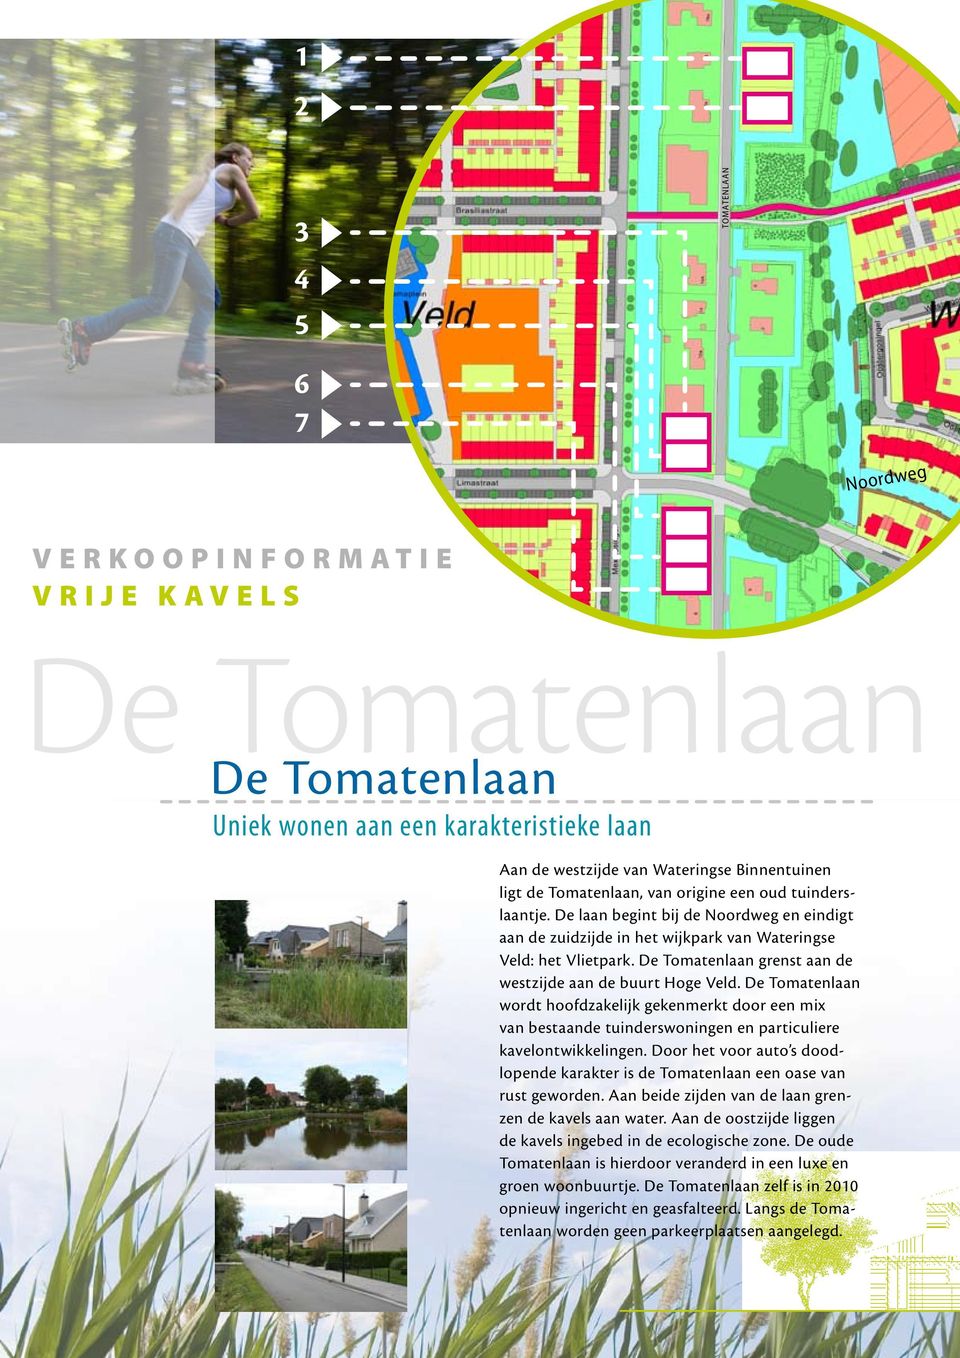 De Tomatenlaan grenst aan de westzijde aan de buurt Hoge Veld. De Tomatenlaan wordt hoofdzakelijk gekenmerkt door een mix van bestaande tuinderswoningen en particuliere kavelontwikkelingen.